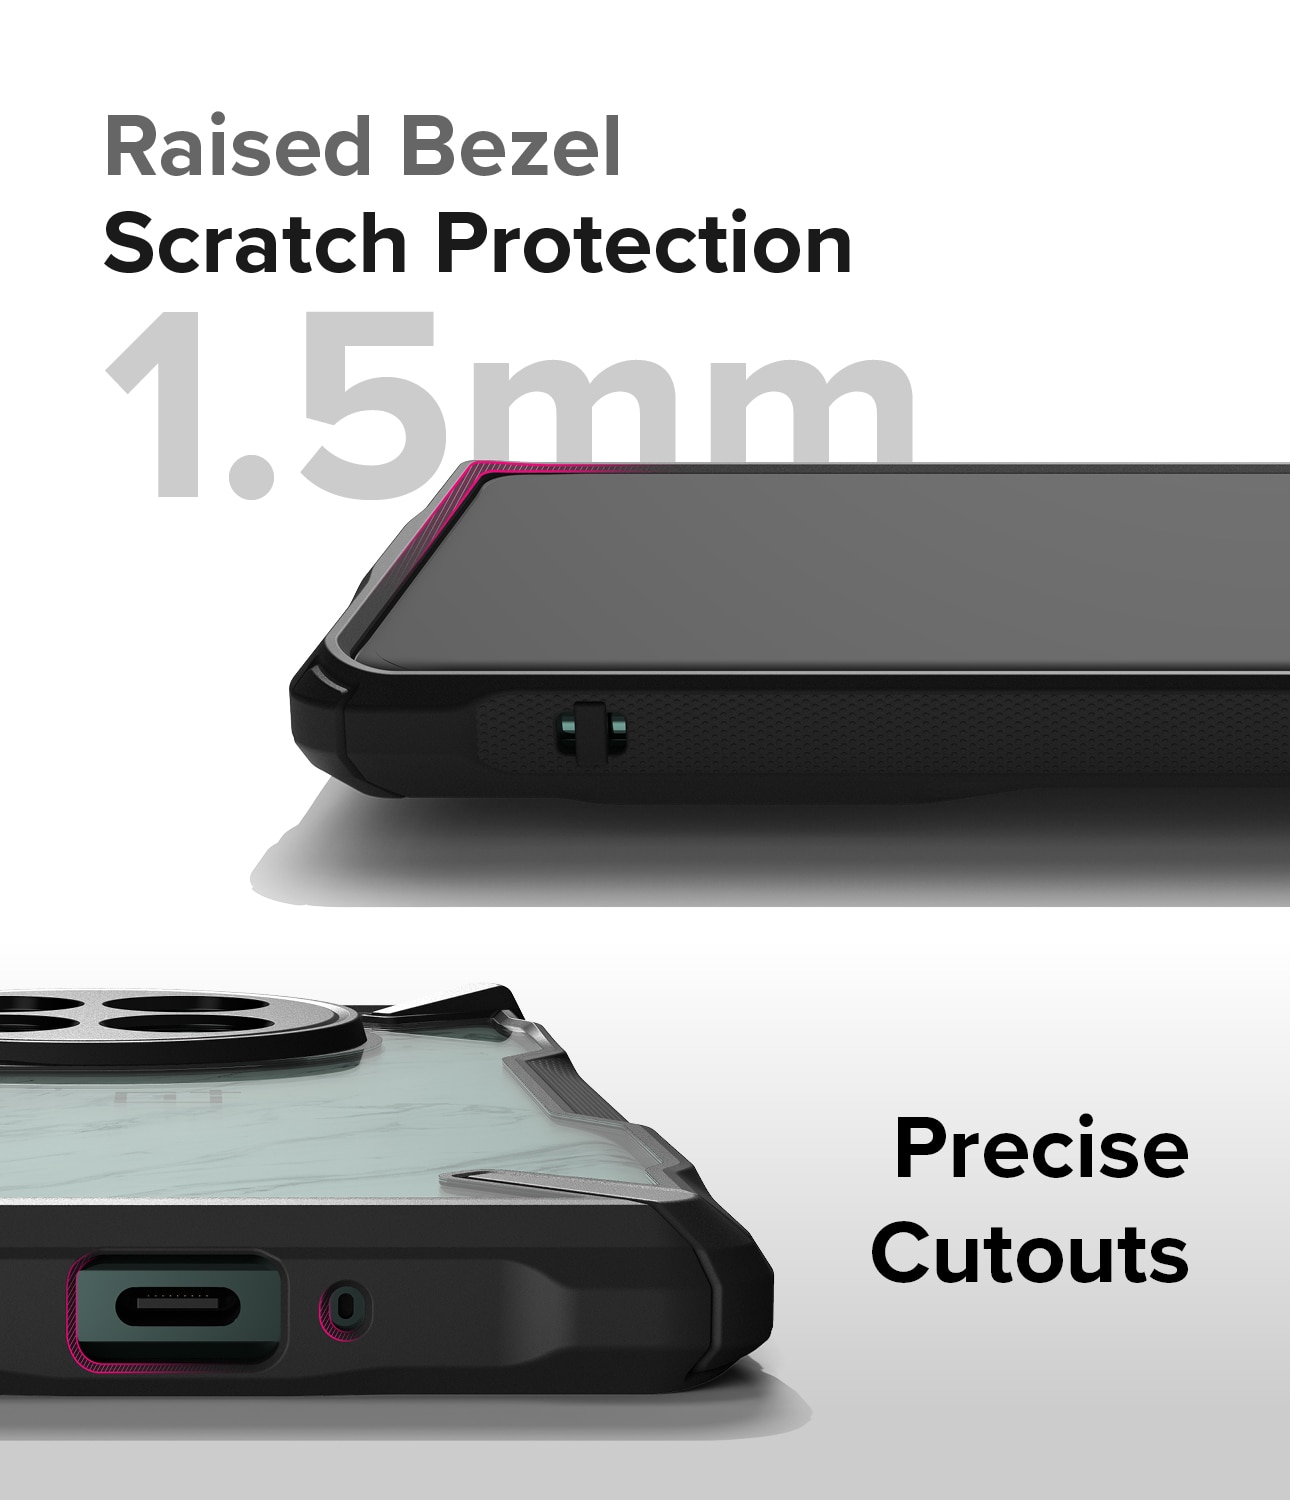 Fusion X Case OnePlus 12 sort